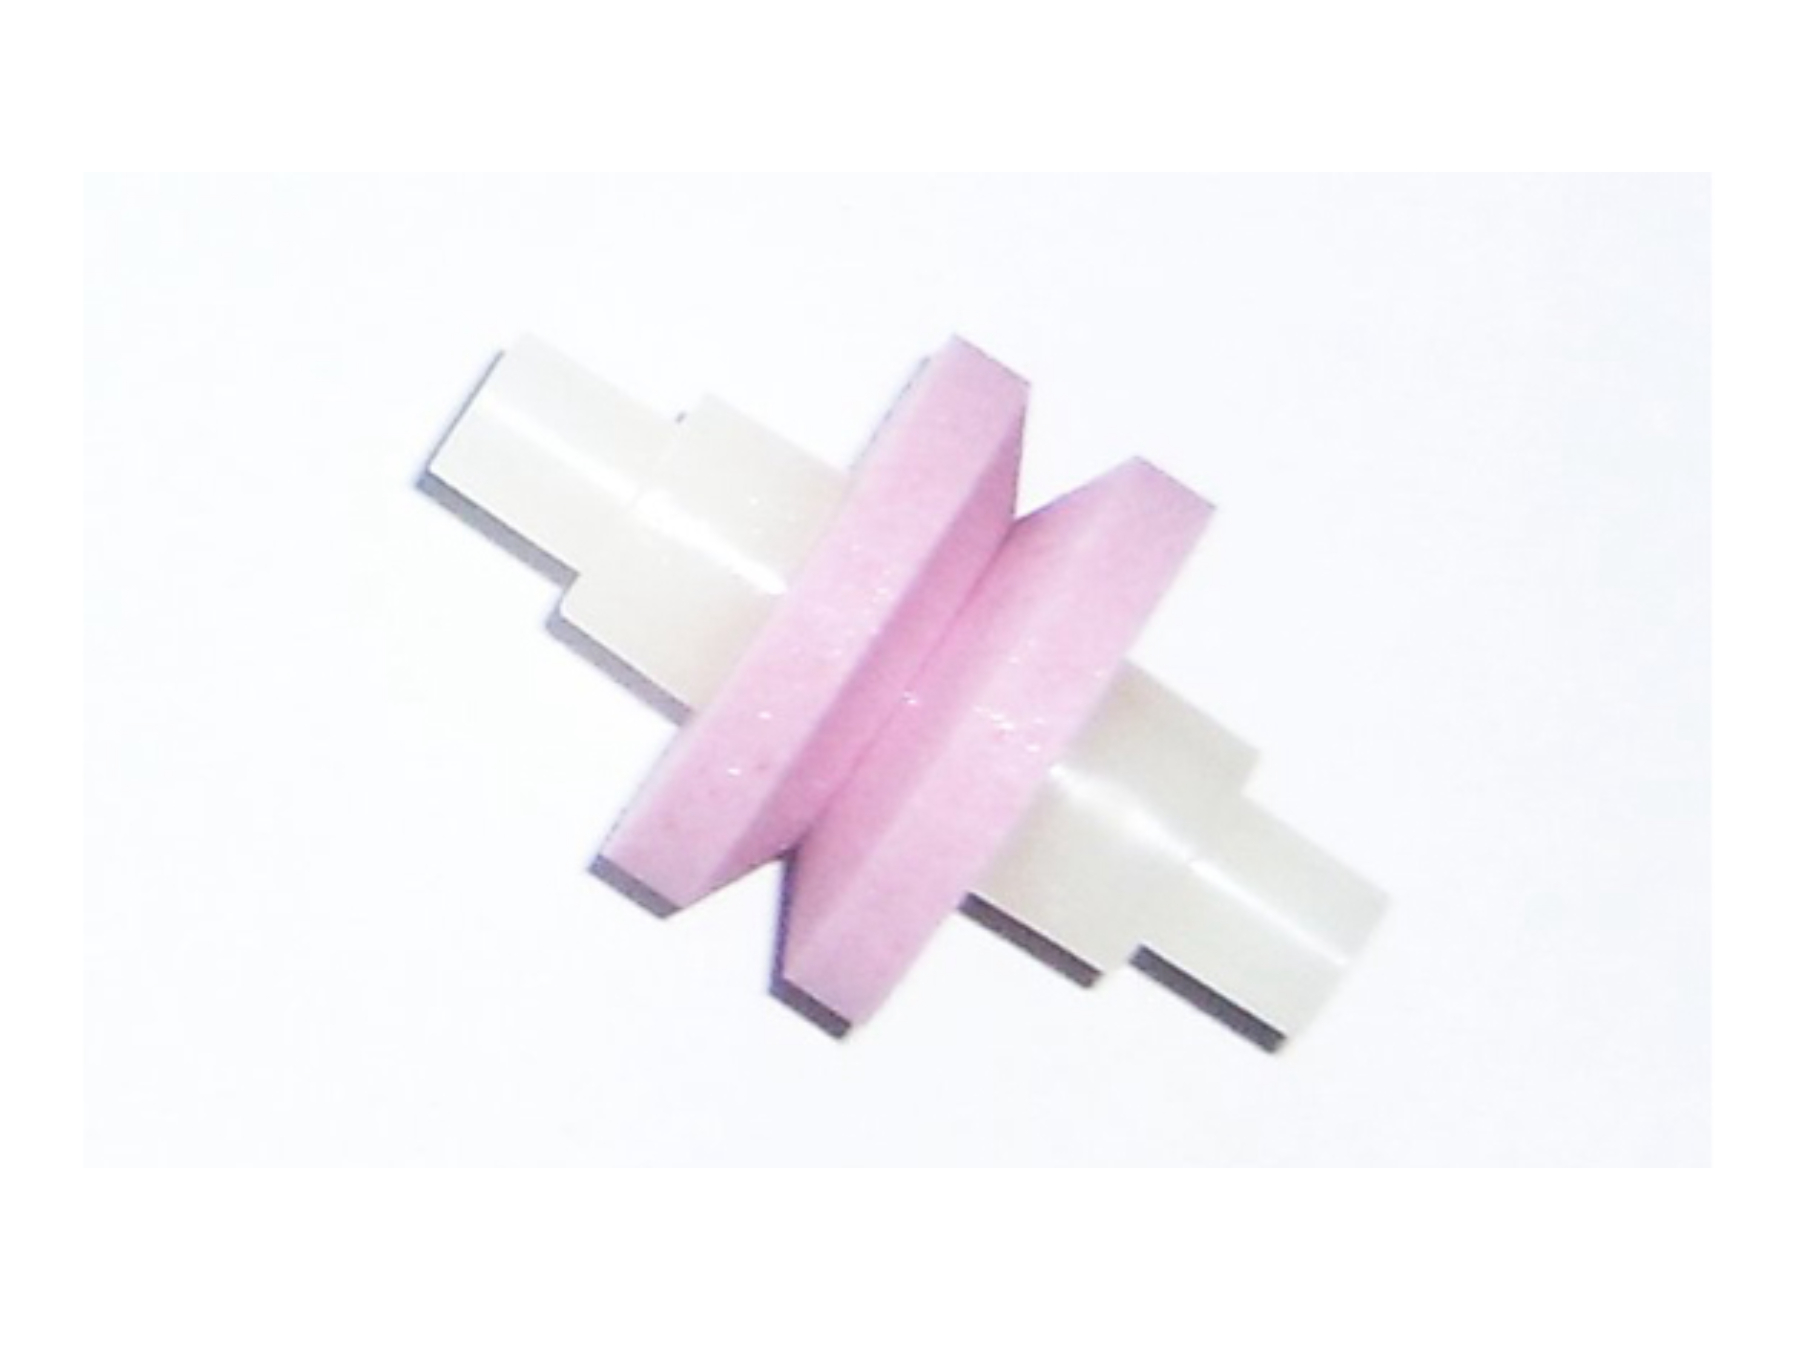 MinoSharp 223 Ersatz Keramikstein für 220-GB und 220-BR, rosa